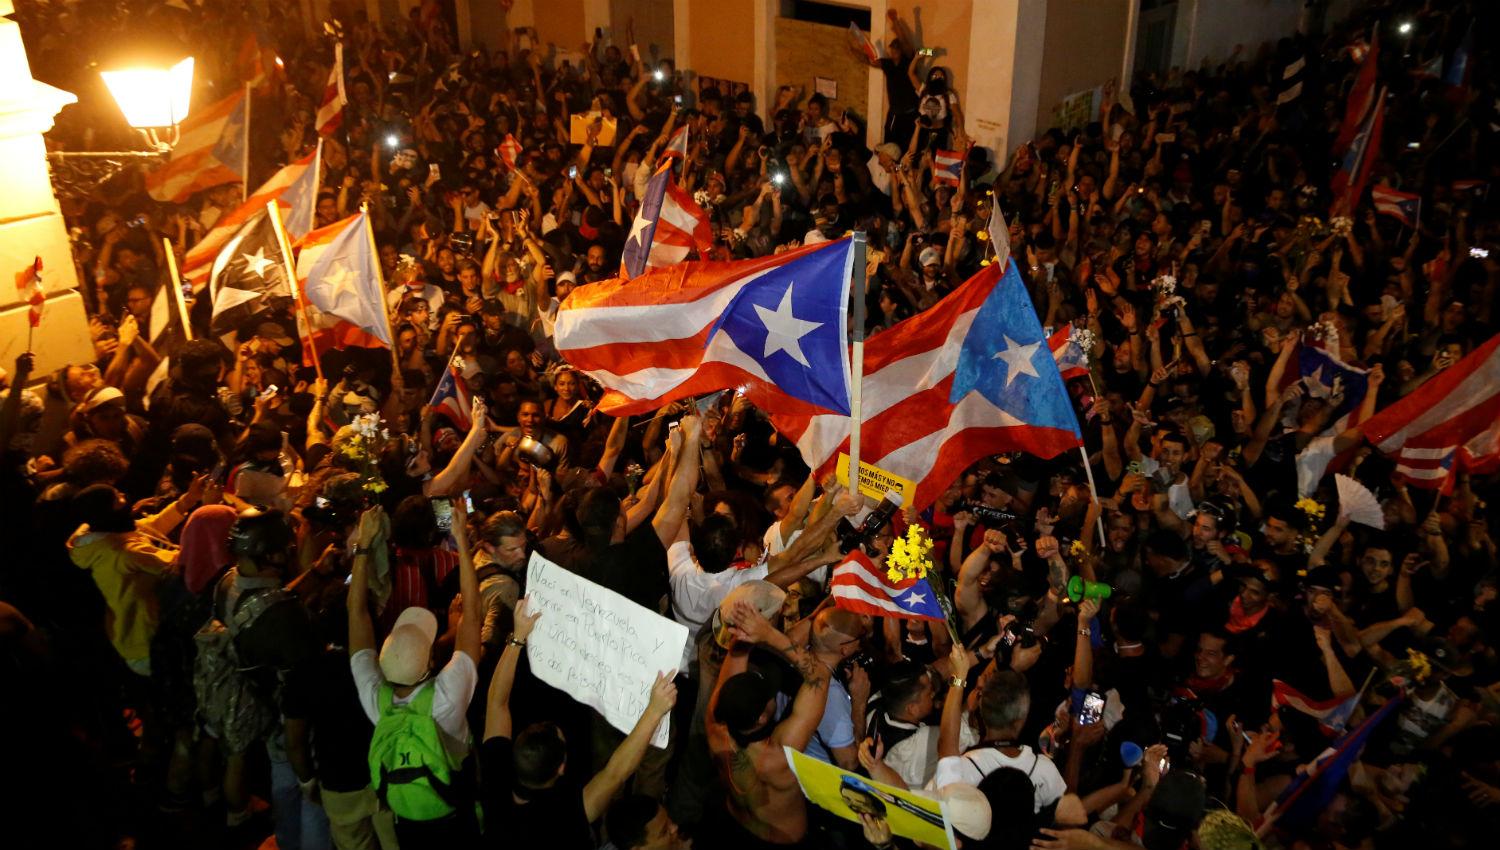  Renunció el gobernador de Puerto Rico luego de protestas populares y de un escándalo